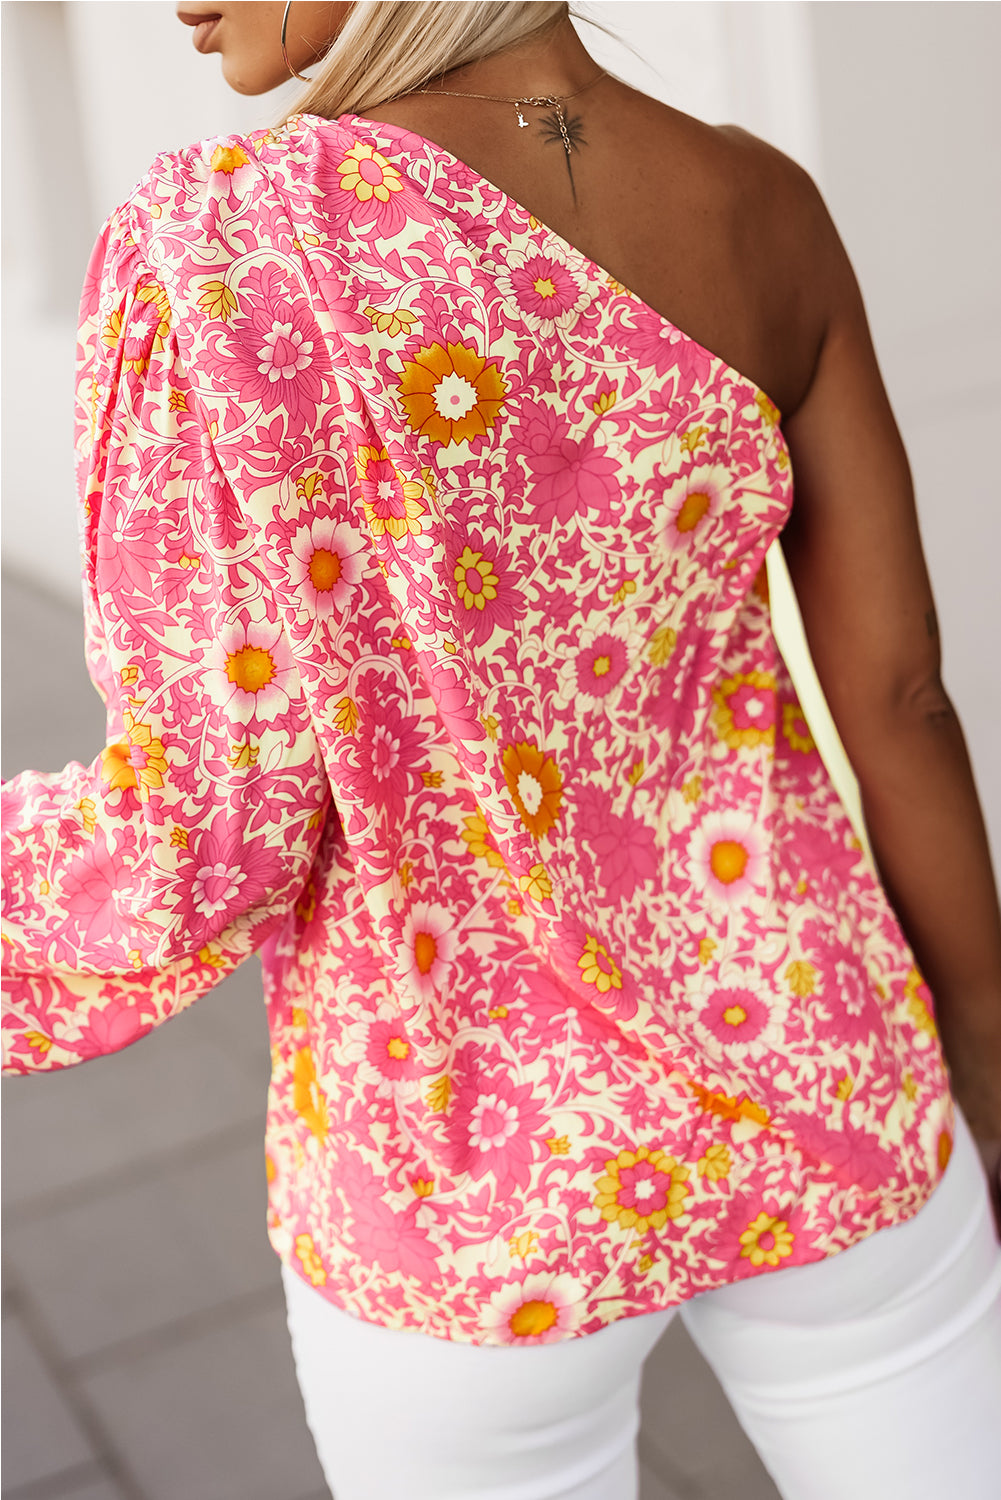 Rožnata bluza s cvetličnimi rokavi na eno ramo in naborke